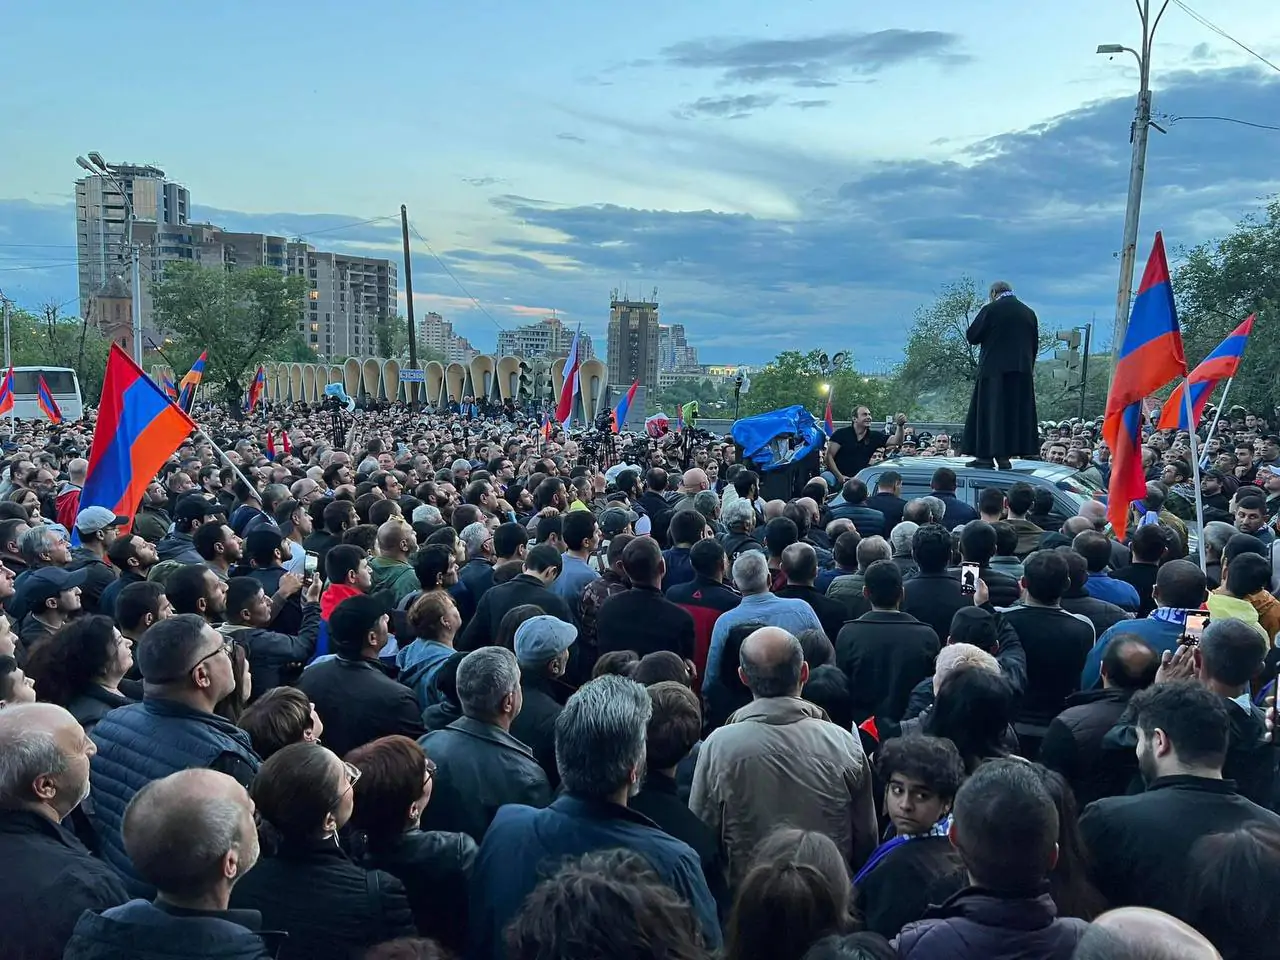 Теряя легитимность, Пашинян грозит Армянской церкви репрессиями